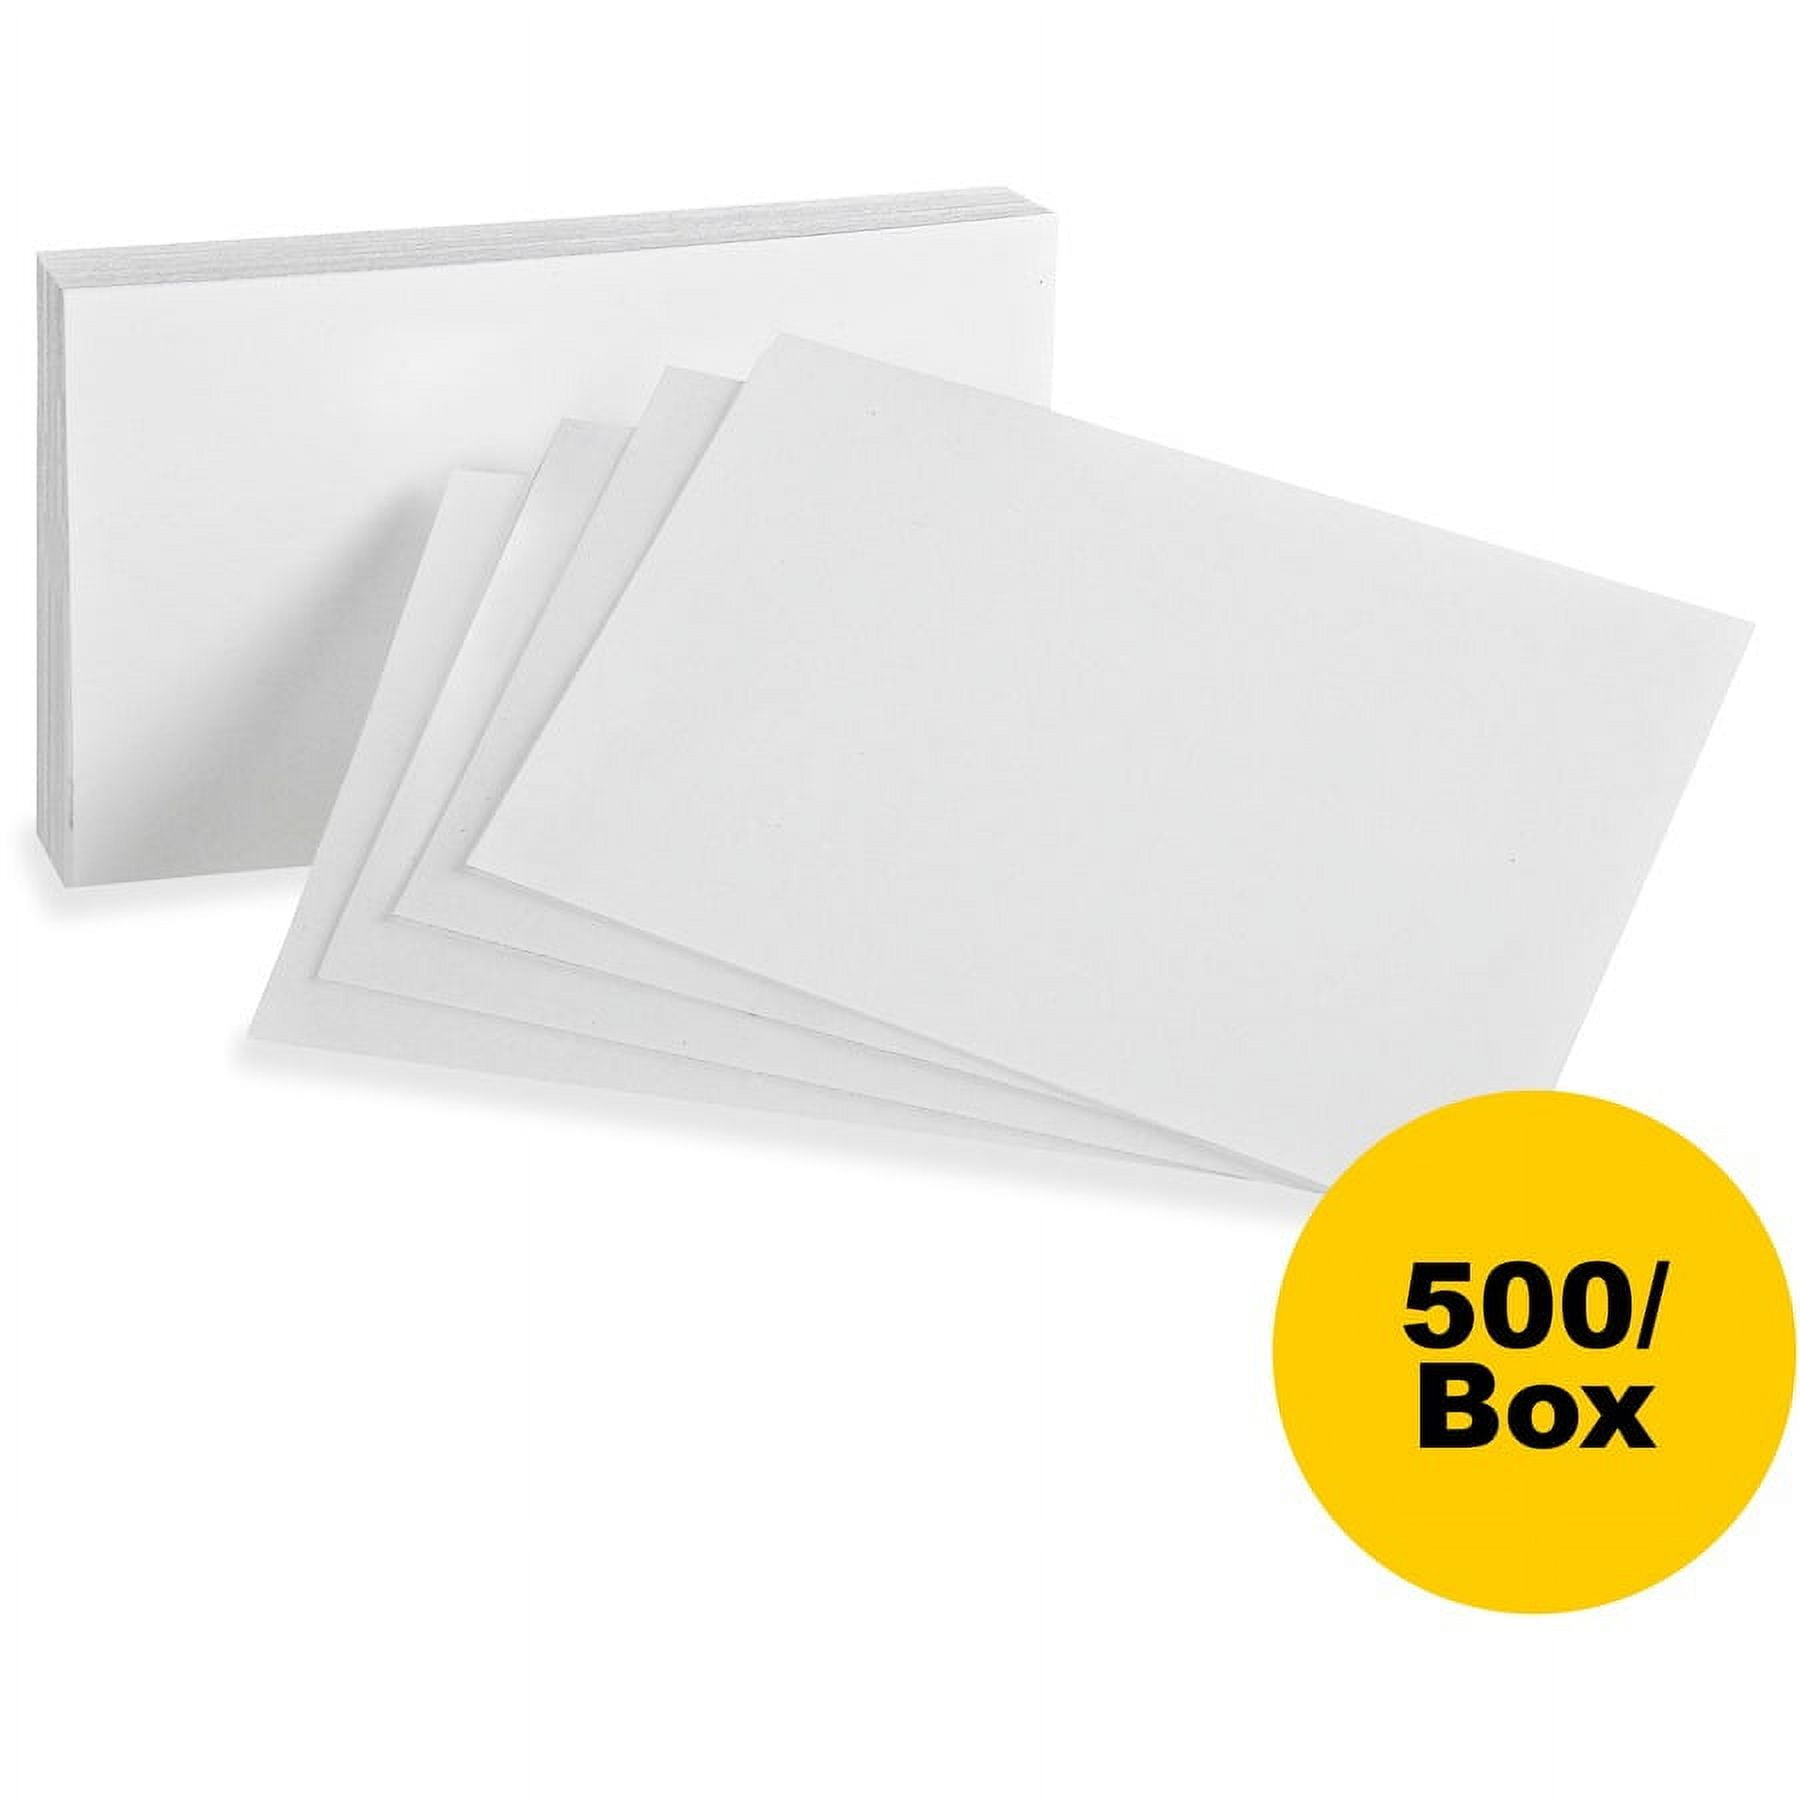 Tan 3x5 Index Cards (100pk) - The Marine Shop